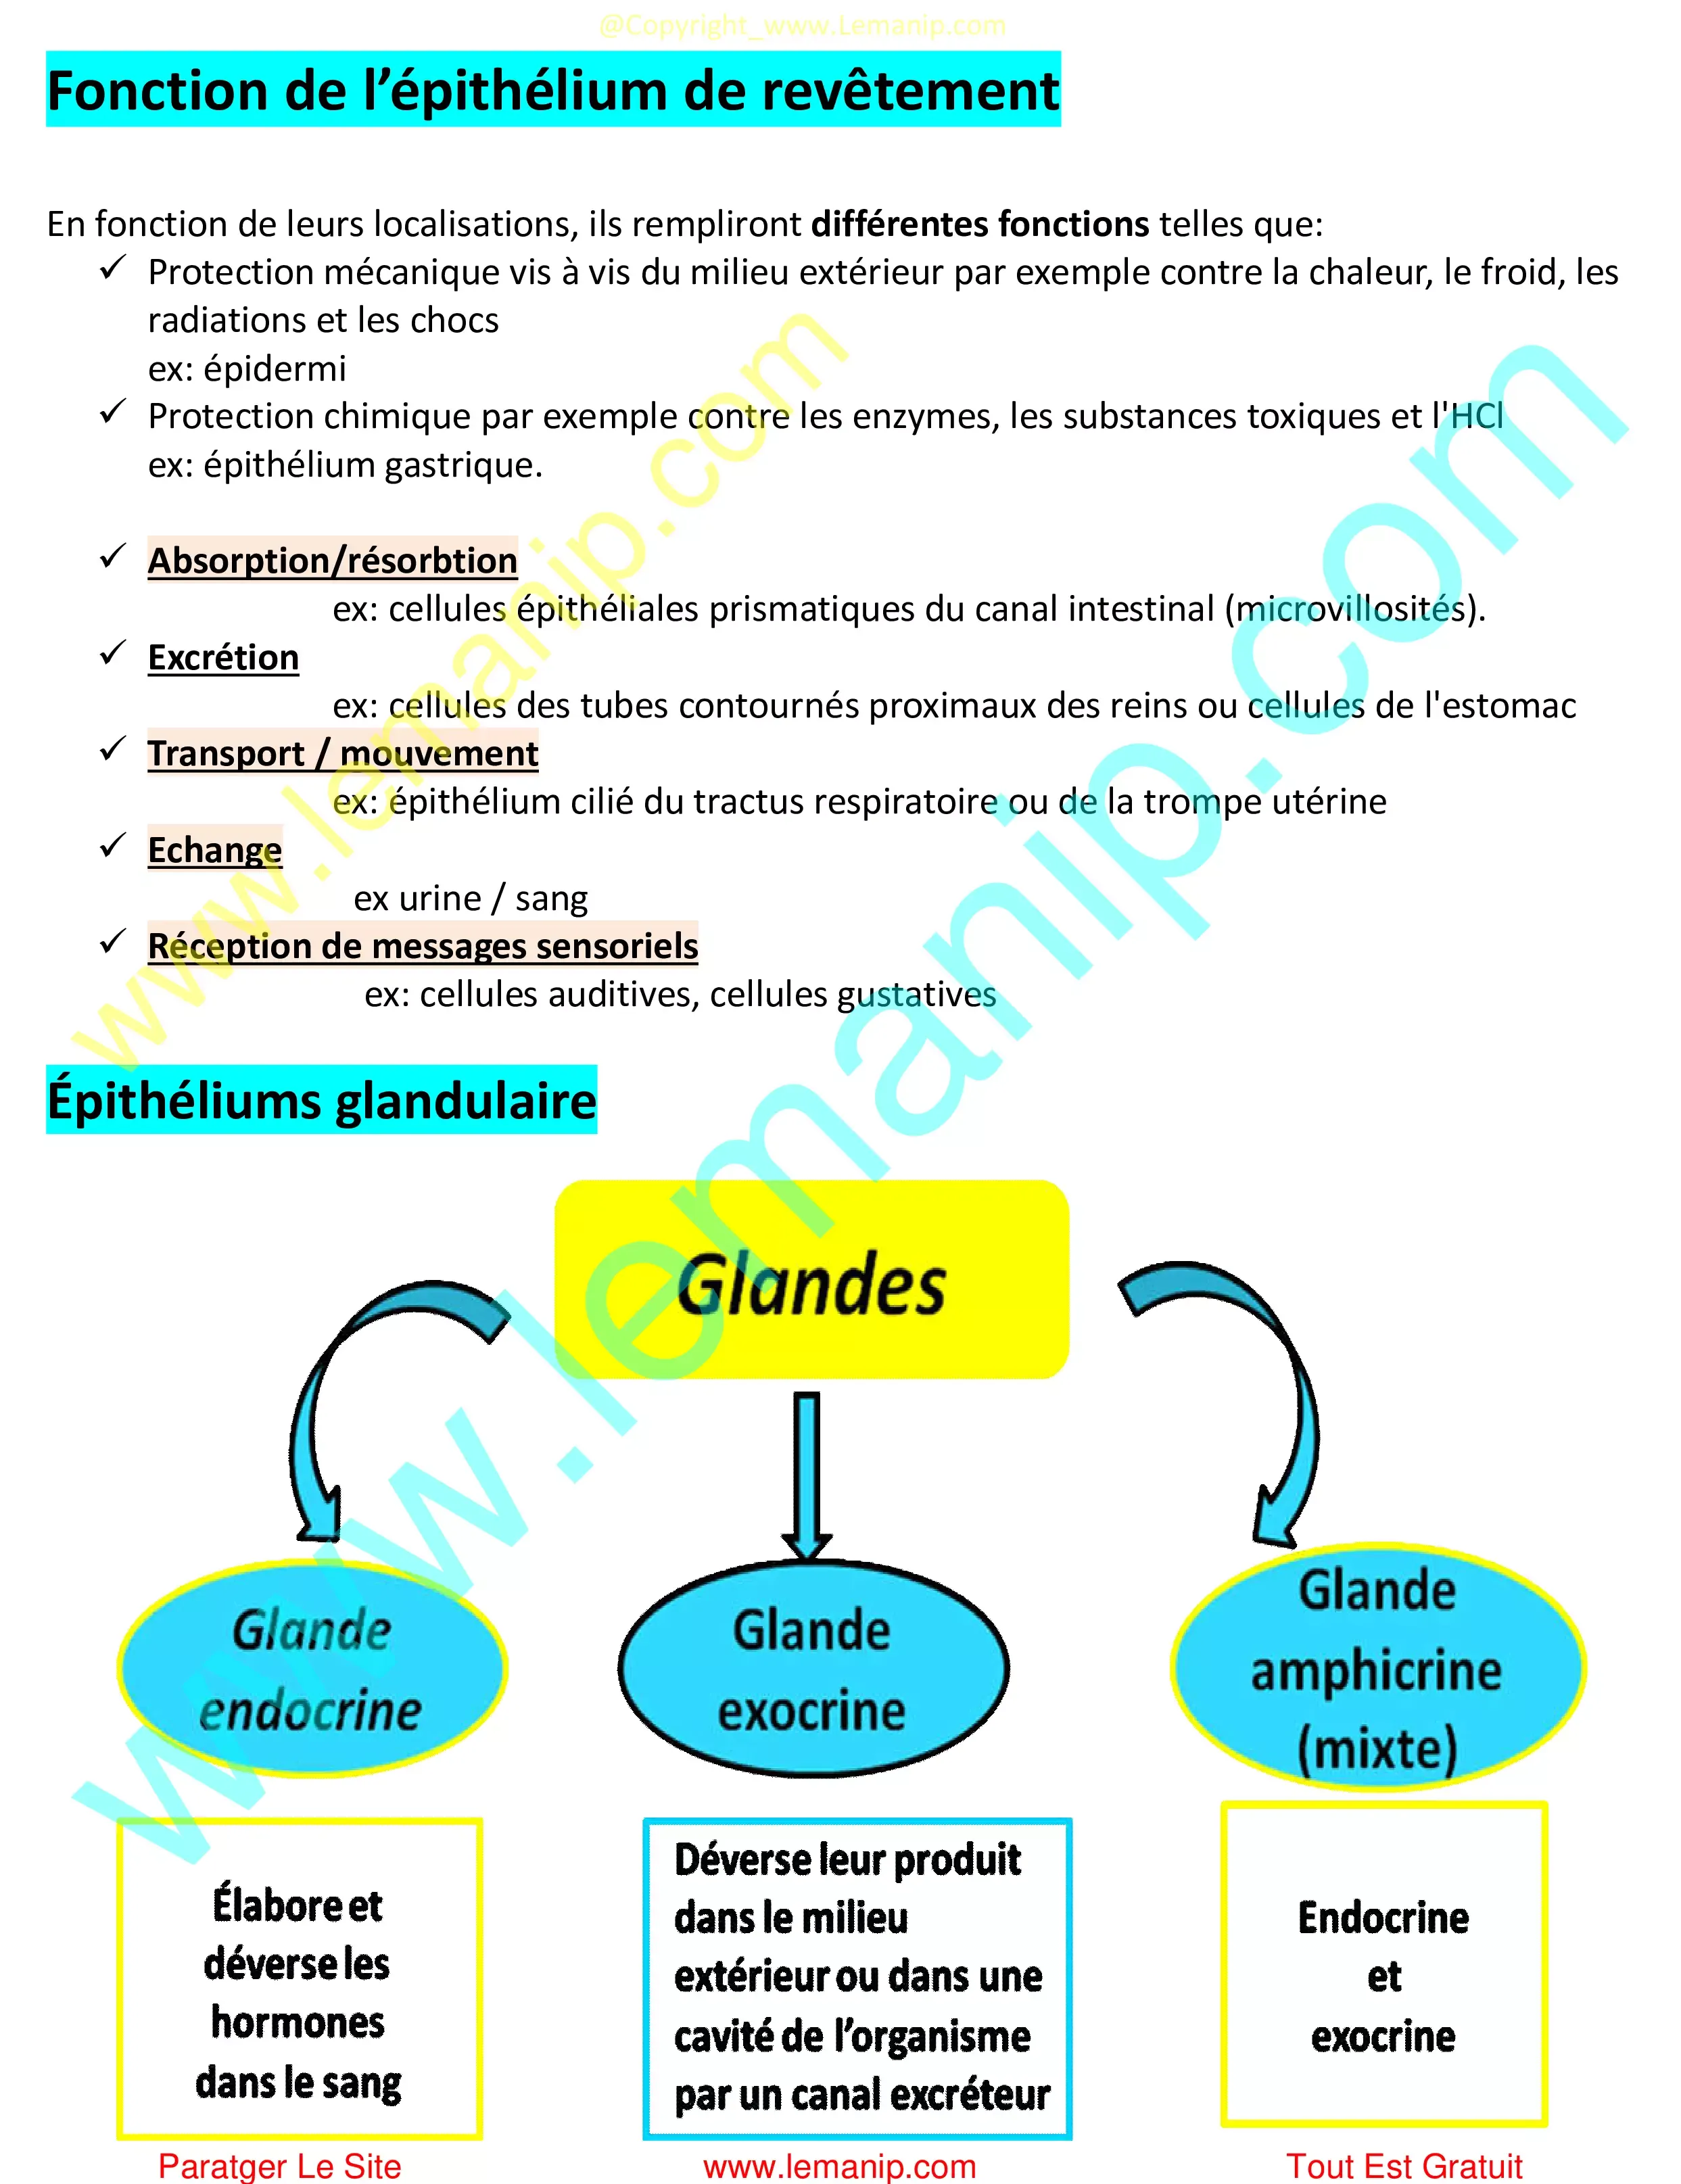 Fonction de l’épithélium de revêtement et Épithéliums glandulaire